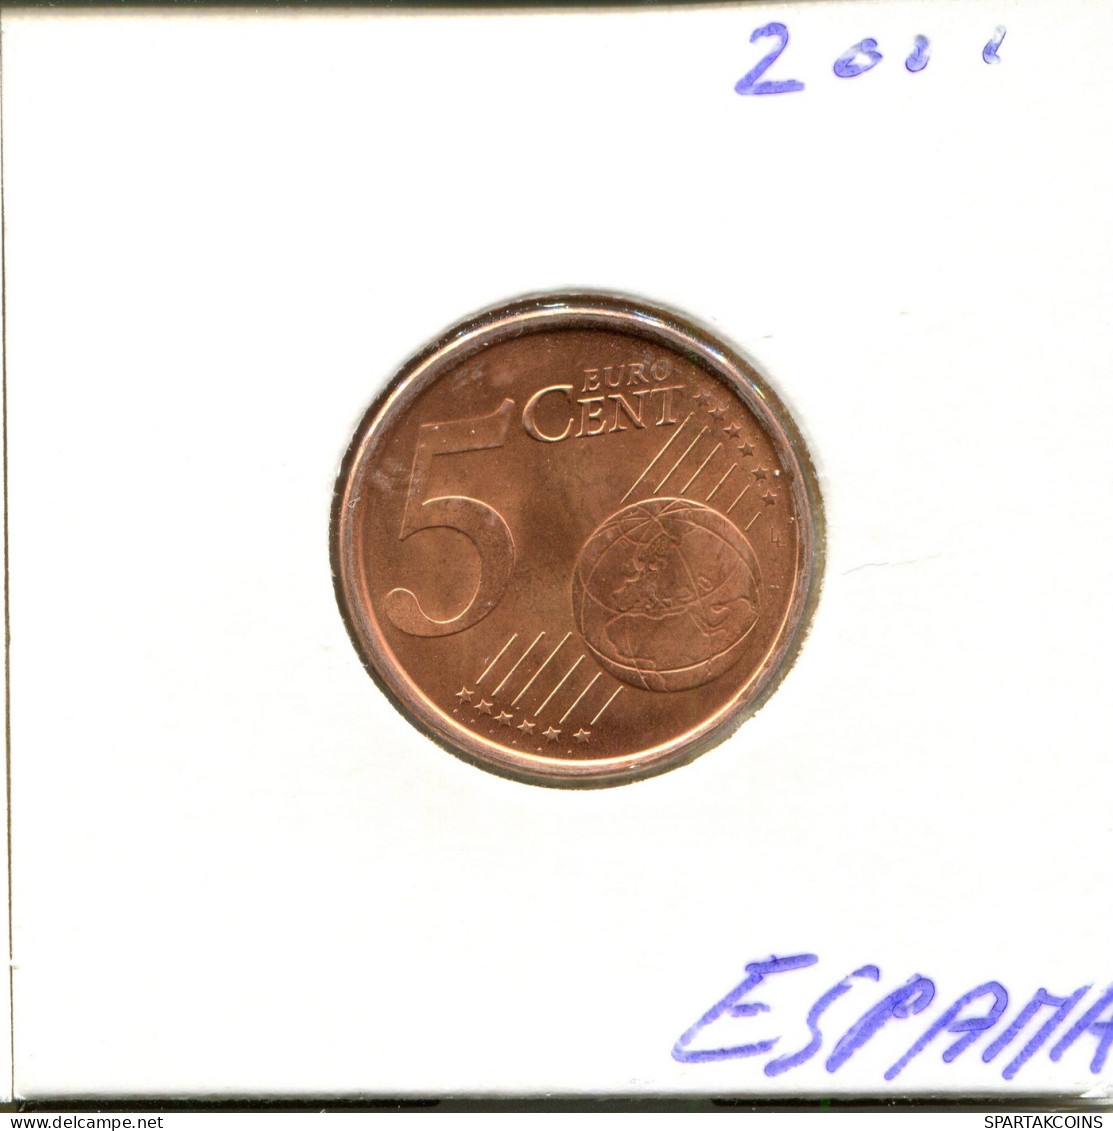 5 EURO CENTS 2001 SPAIN Coin #EU356.U.A - España